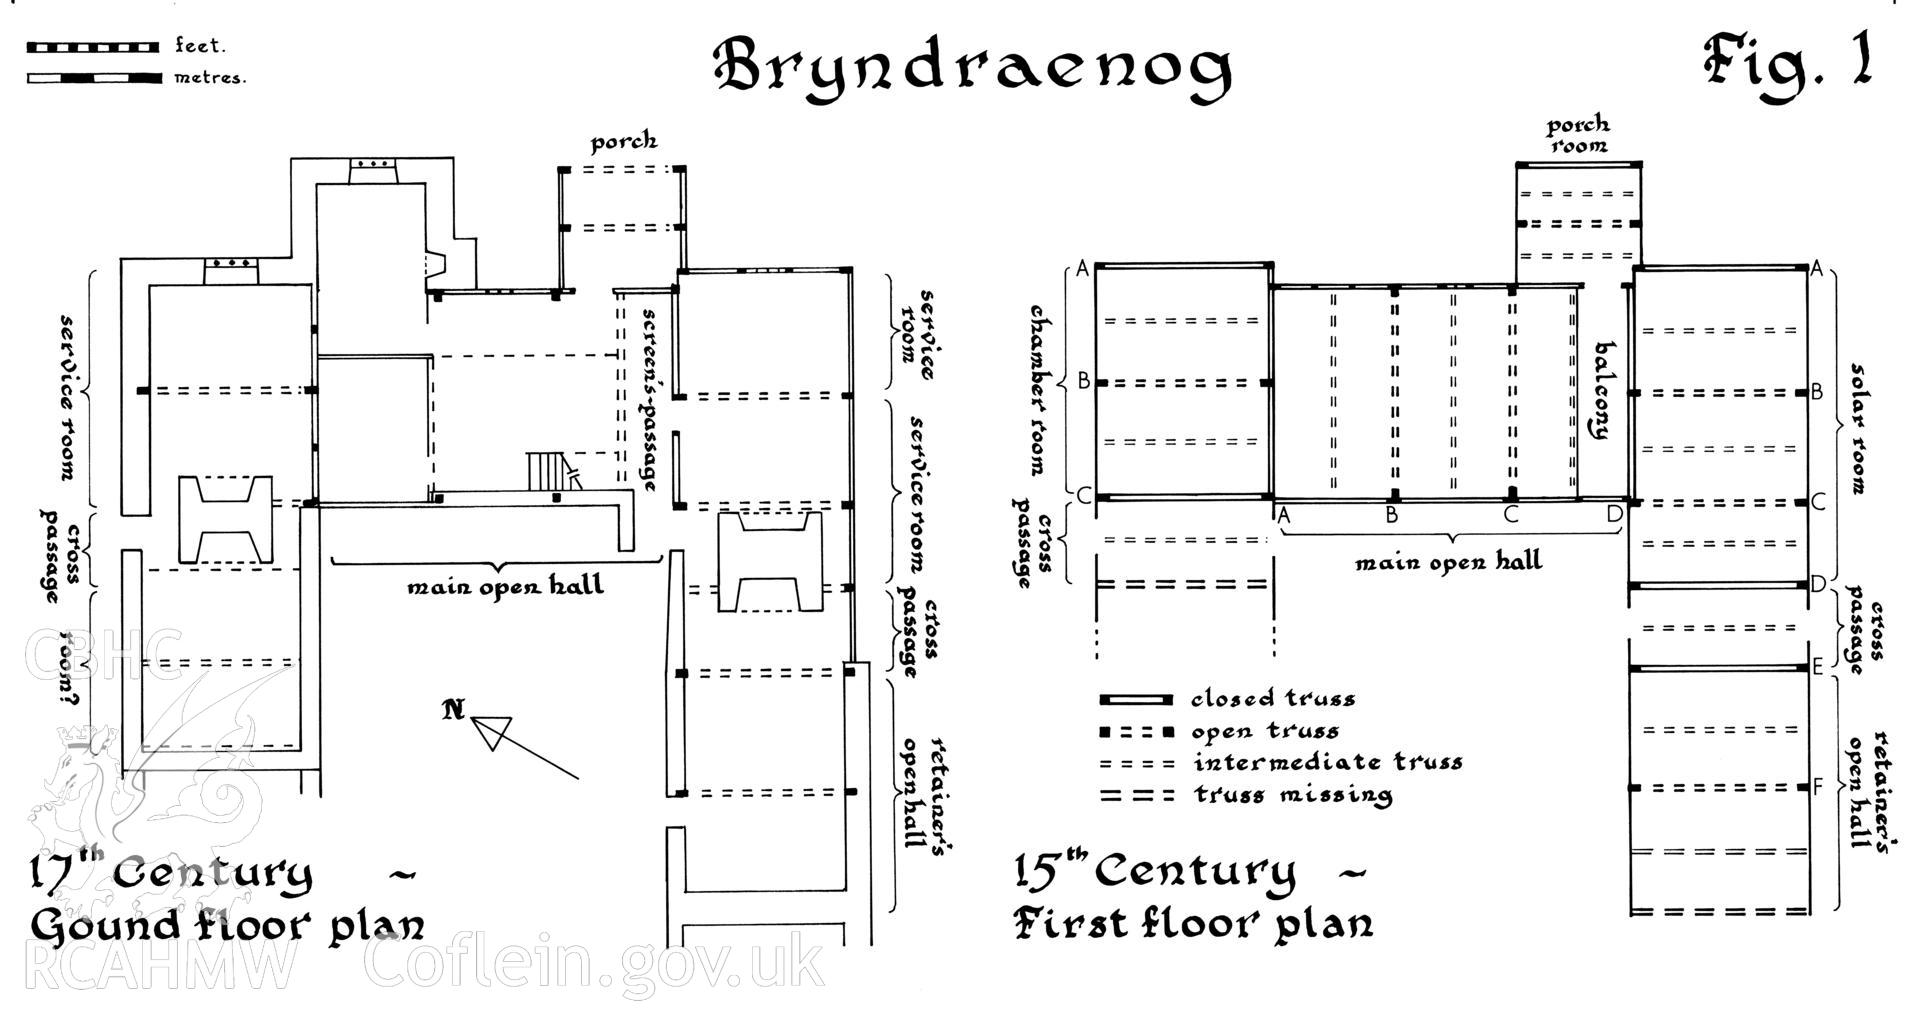 RCAHMW drawing showing plan of Bryndraenog, Bugeildy.